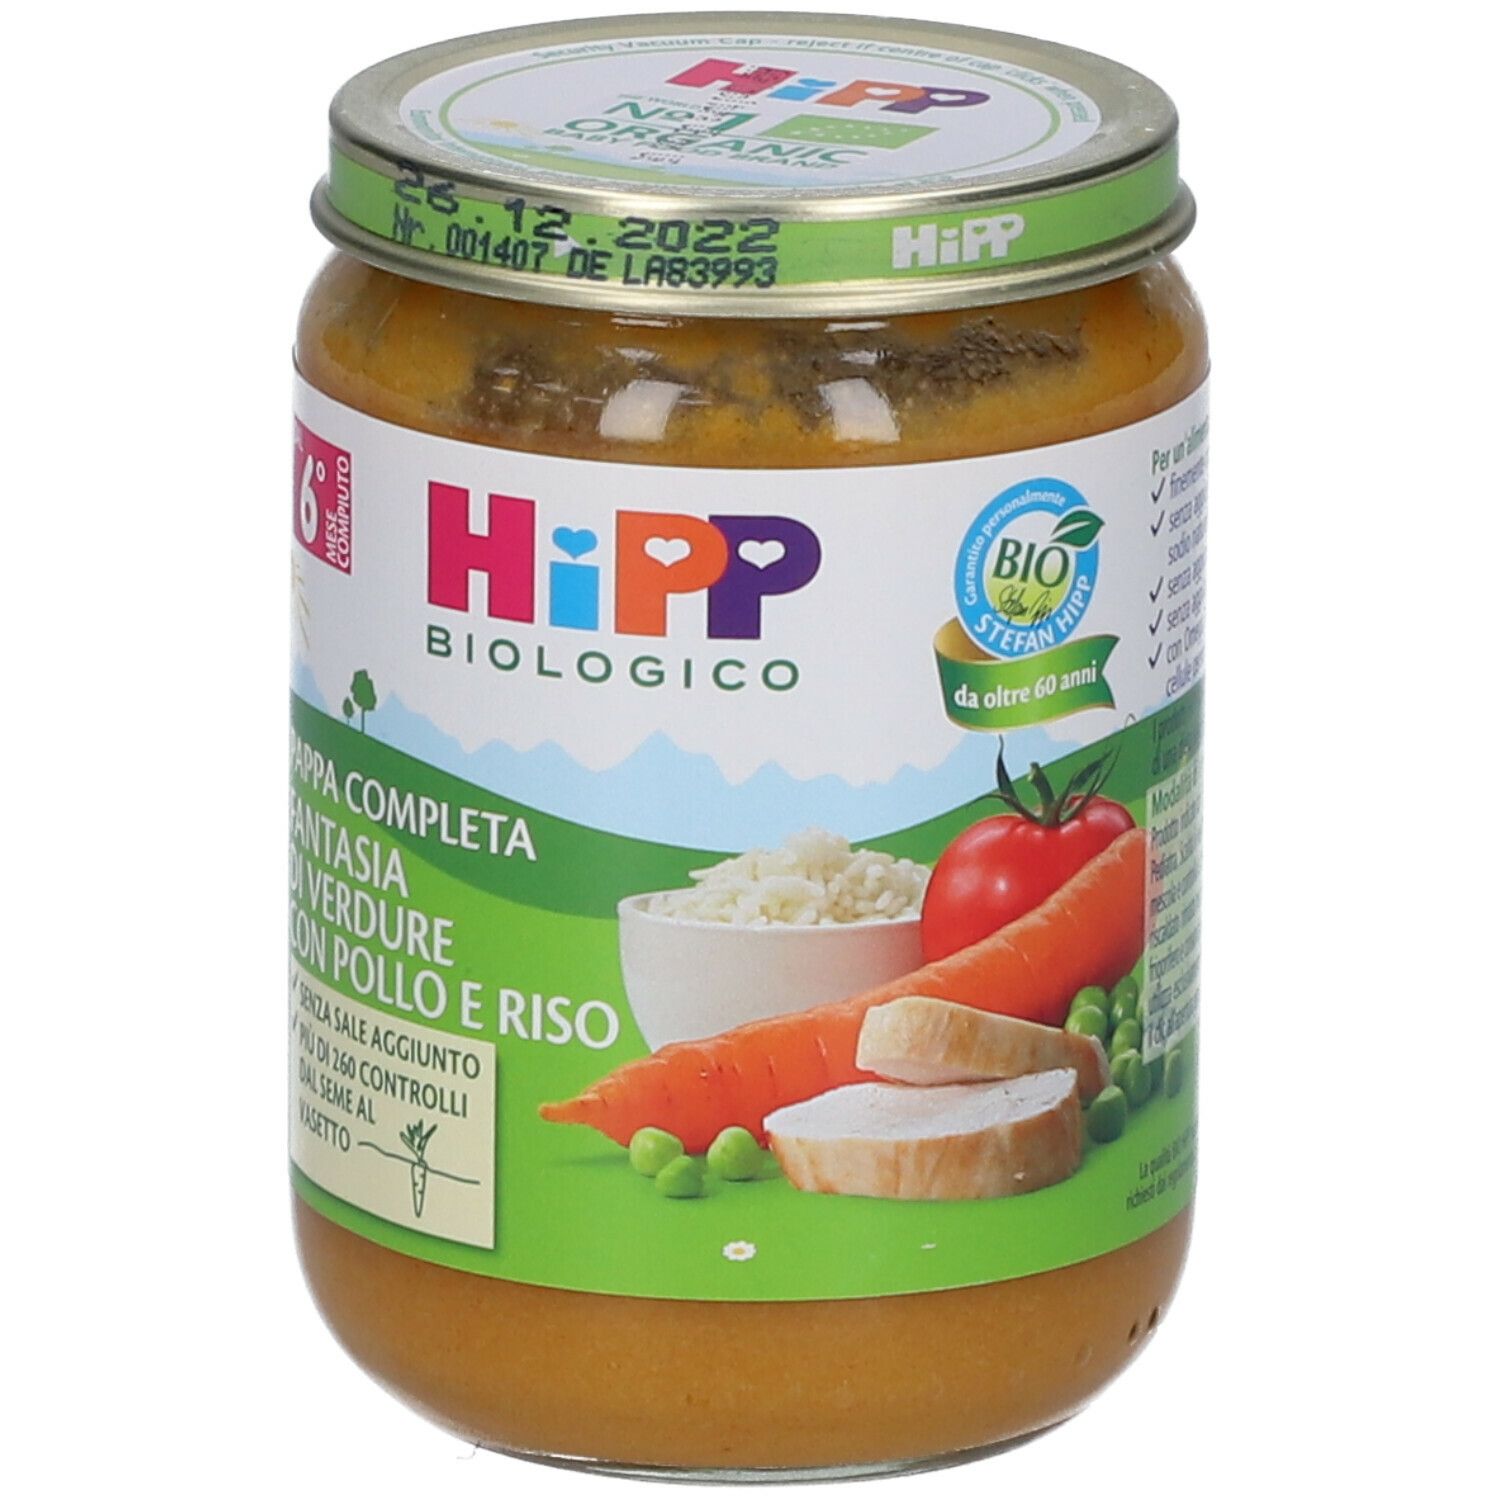 HiPP Biologico Pappa Completa Fantasia di Verdure con Pollo e Riso 190 g